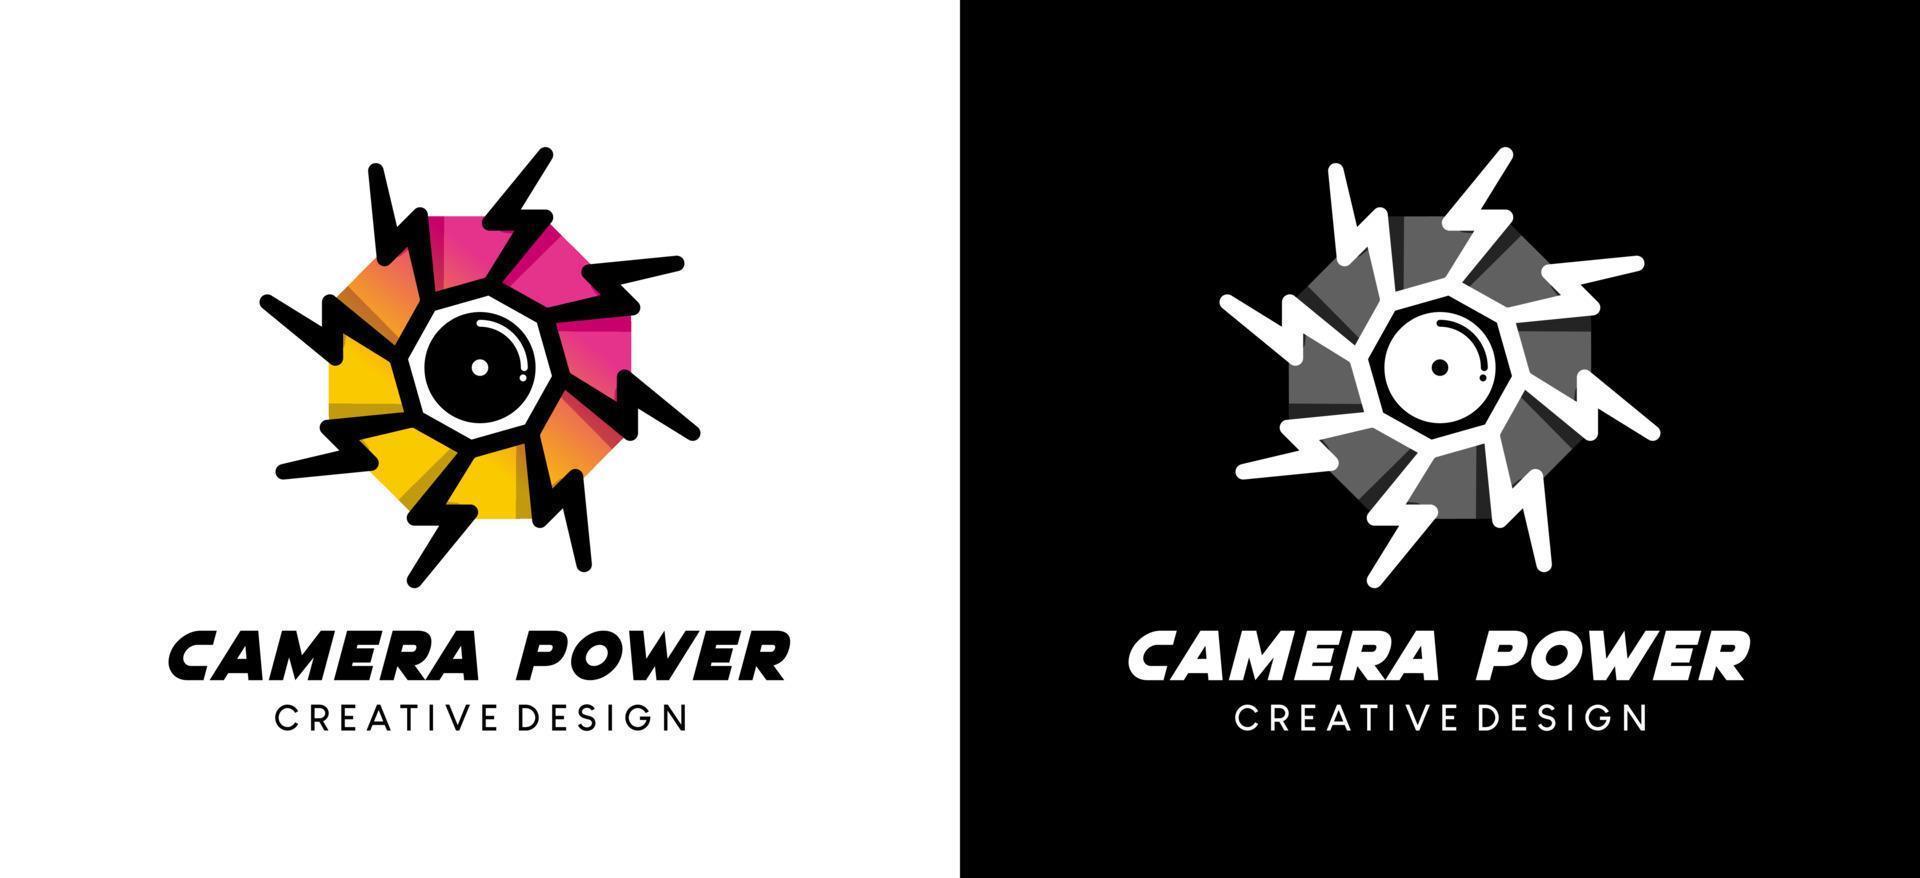 conception du logo de l'appareil photo, illustration du logo de l'objectif de l'appareil photo avec icône d'alimentation électrique vecteur